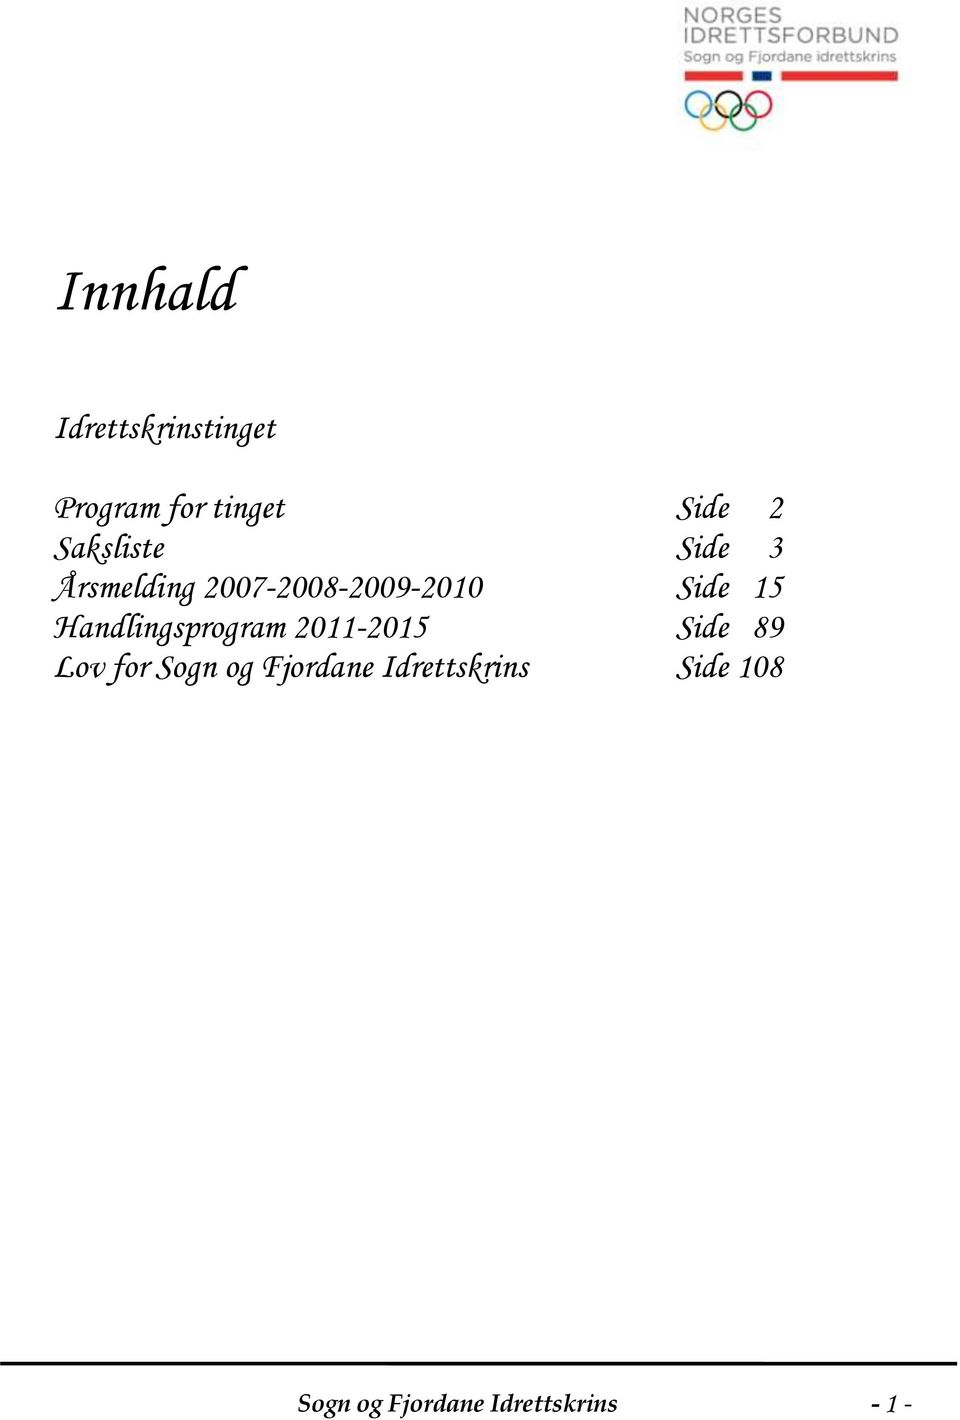 Handlingsprogram 2011-2015 Side 89 Lov for Sogn og